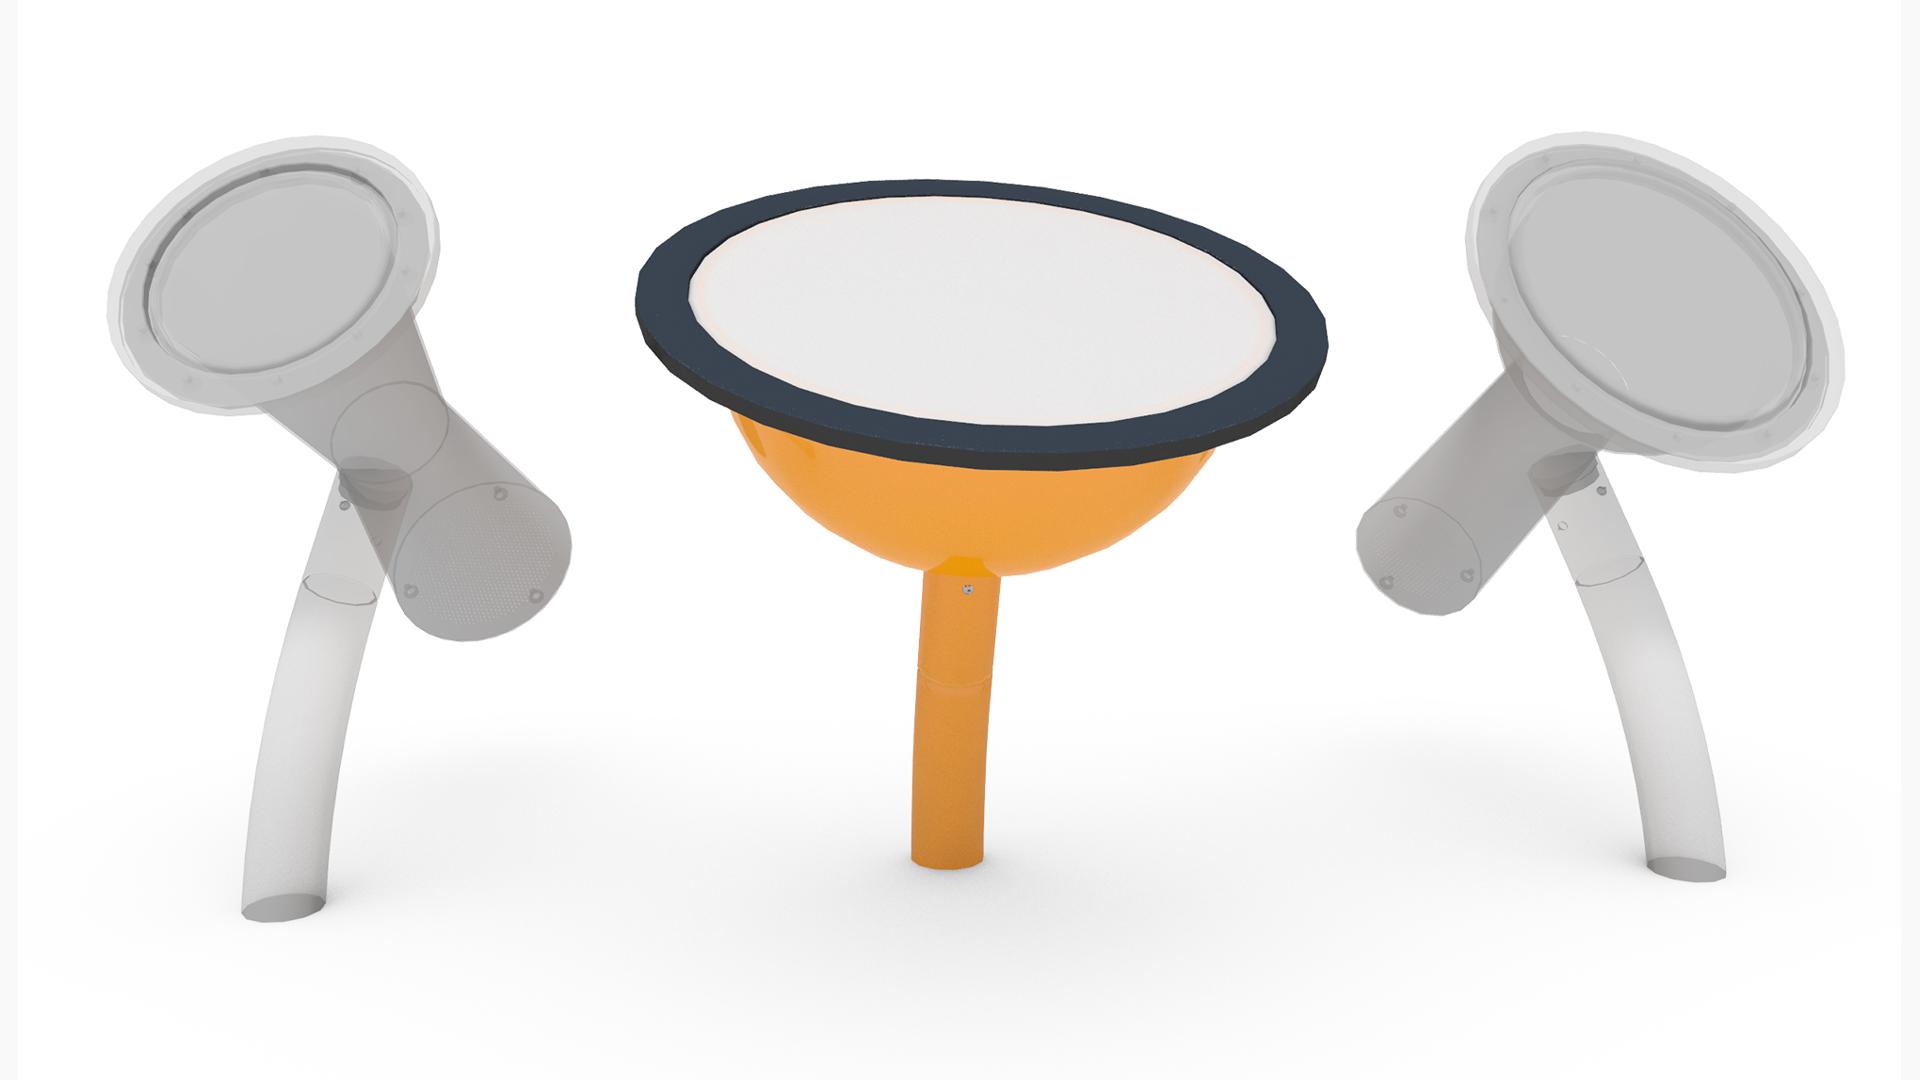 3D Model: Musical Instruments - Steel Pan Drum - Twinkl